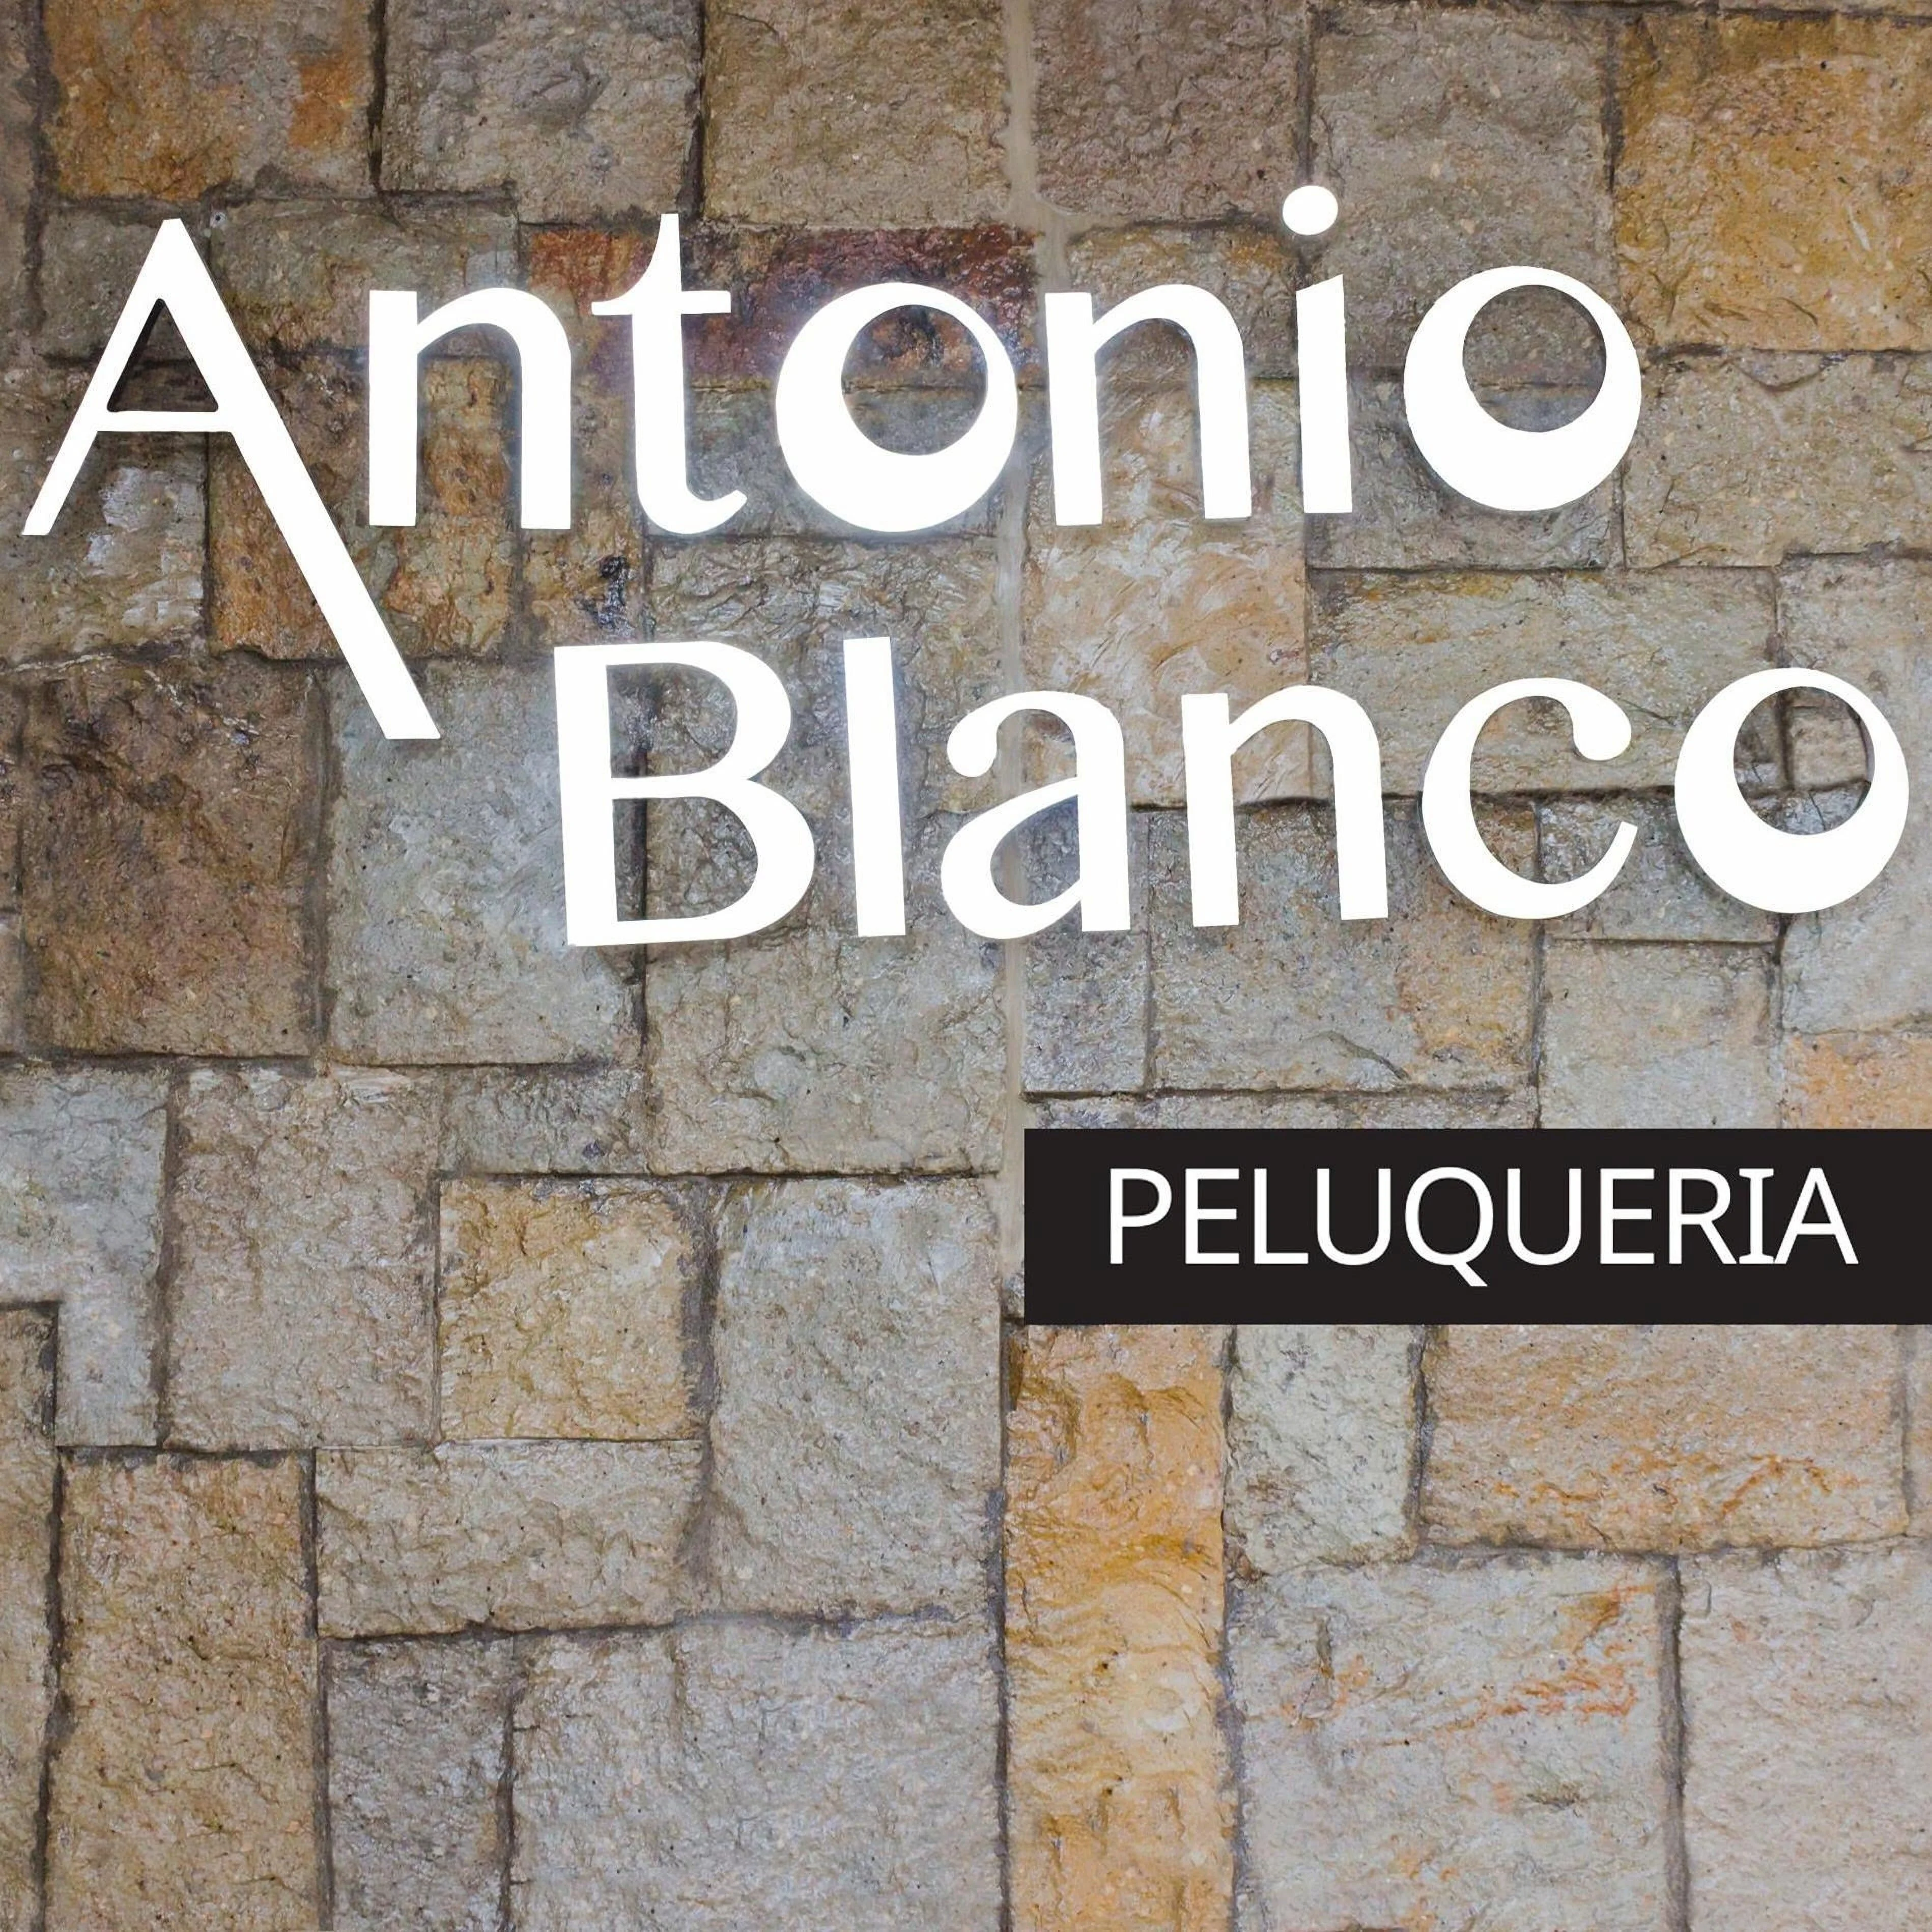 Antonio Blanco Peluqueria-1850